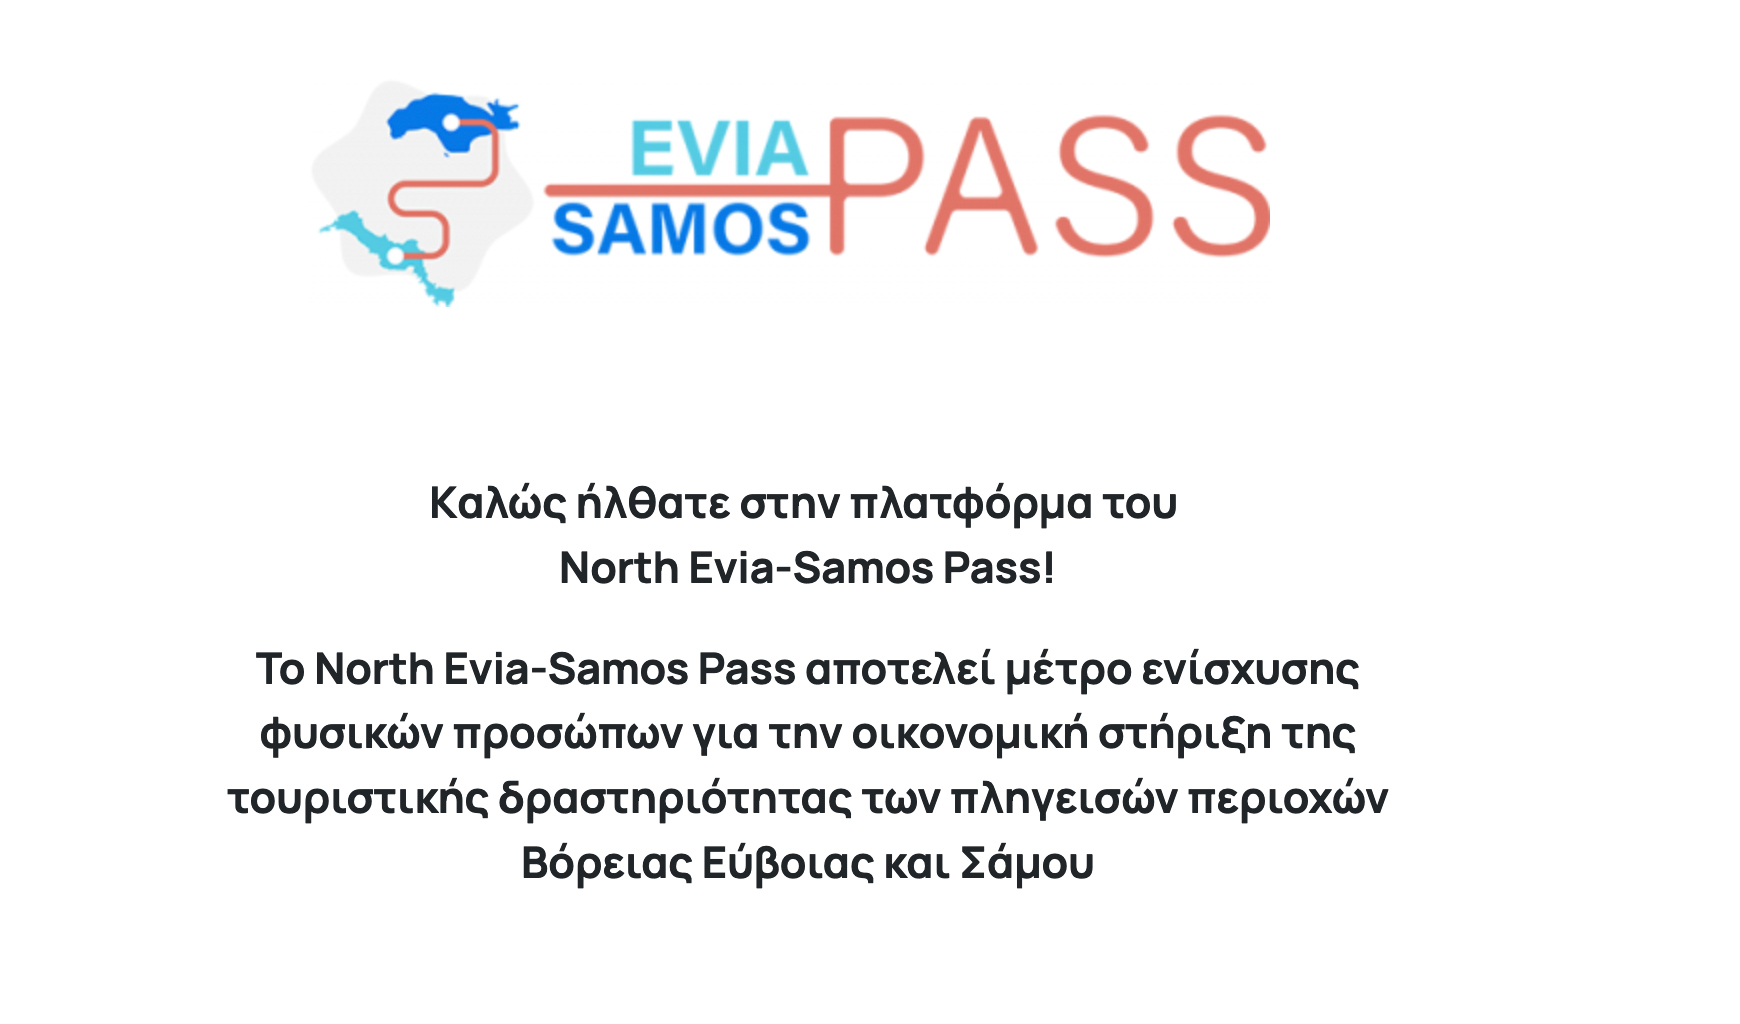 Η πλατφόρμα για την επιδότηση έως 300 ευρώ για τουρισμό το Σεπτέμβριο σε Βόρεια Εύβοια και Σάμο ανοίγει ξανά στις 25 Αυγούστου.